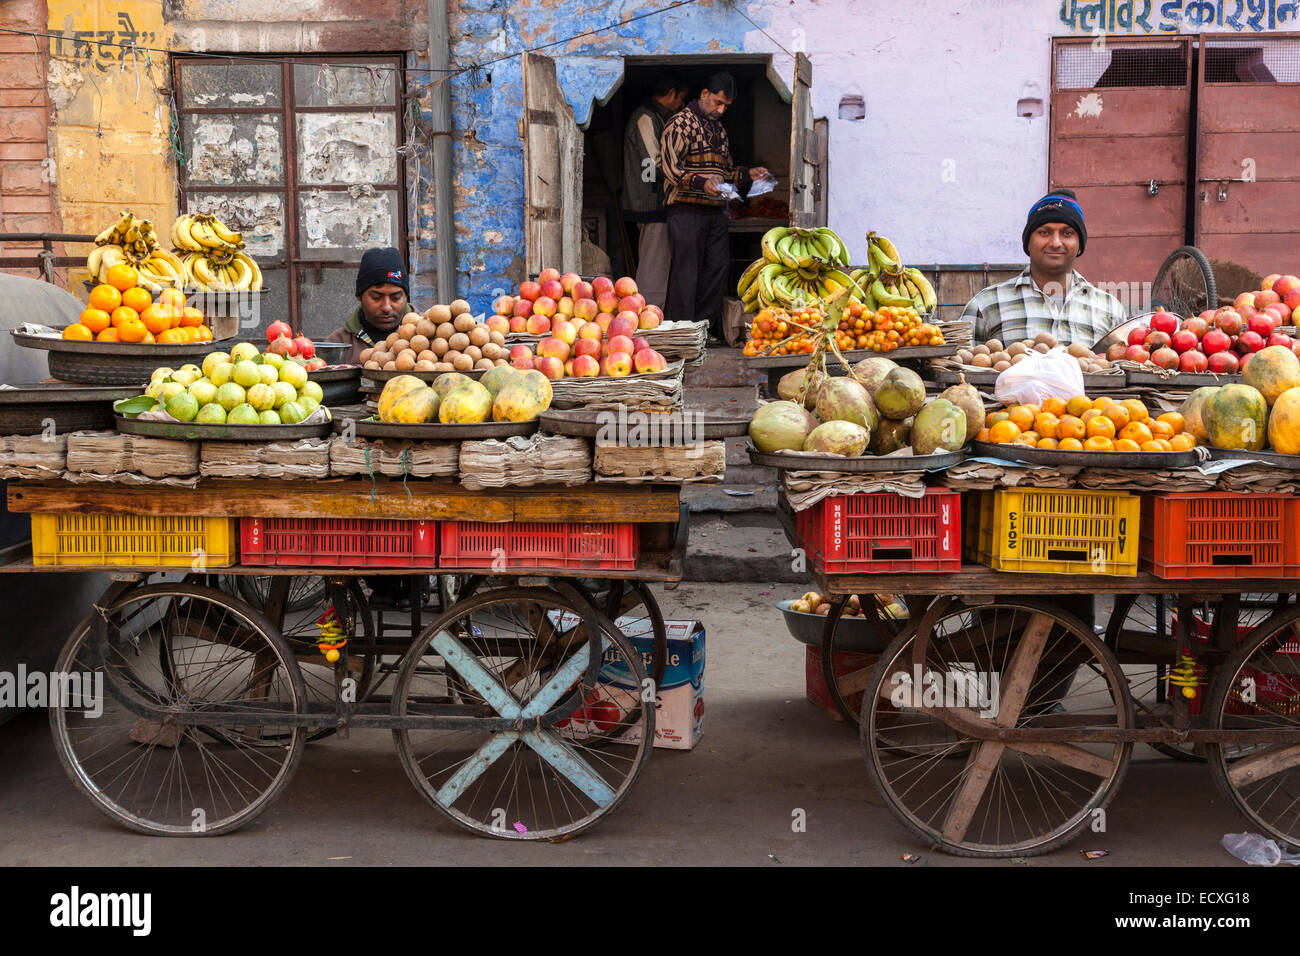 Indian fruit market, Jodhpur, India Stock Photo